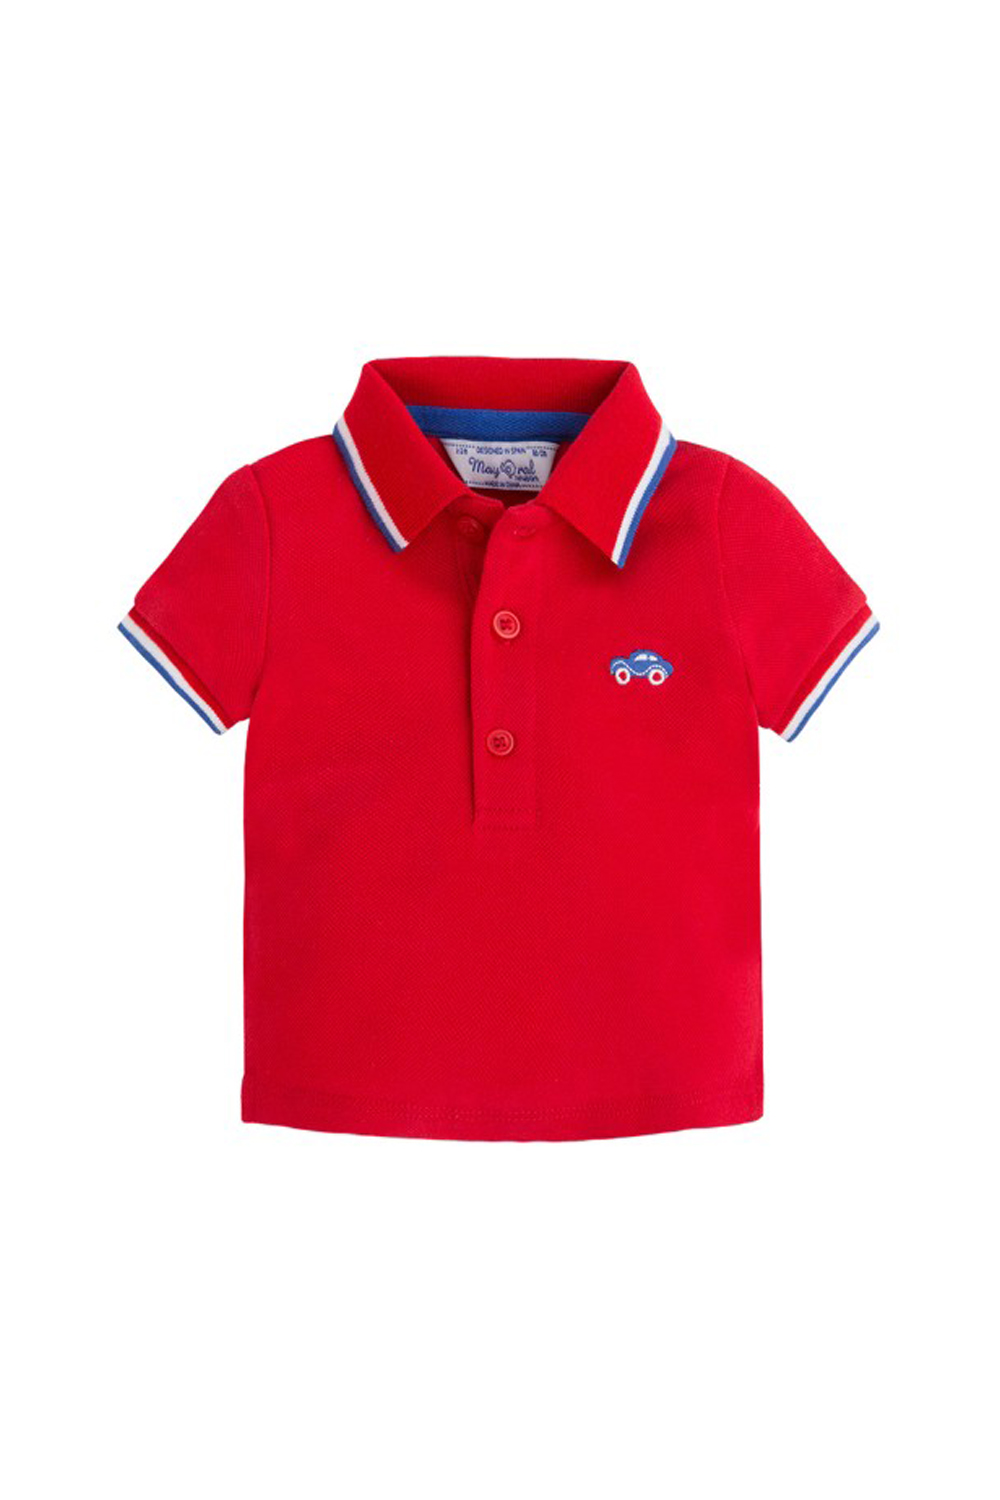 Παιδική Μπλούζα Για Αγόρι MAYORAL 21-00190-024 Κόκκινο